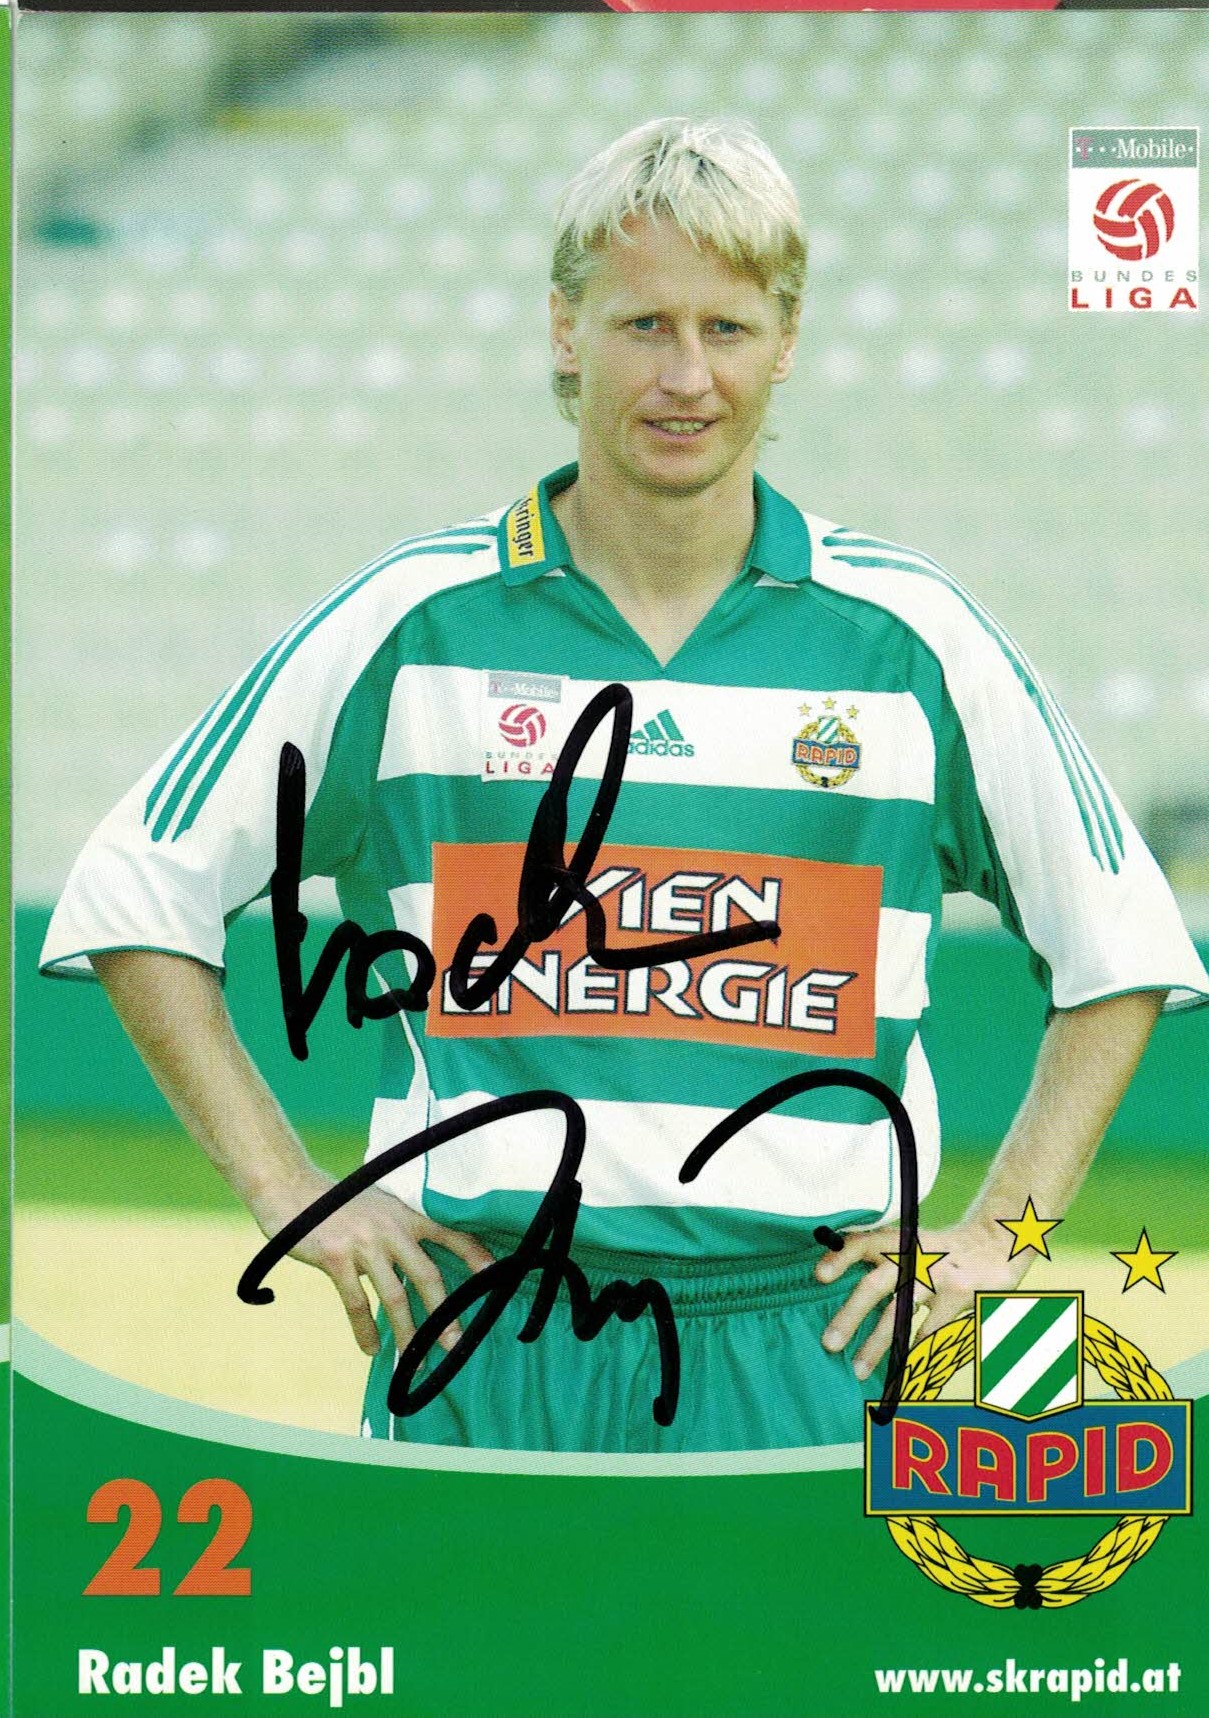 Radek Bejbl Rapid Wien 2005/06 Podpisova karta autogram